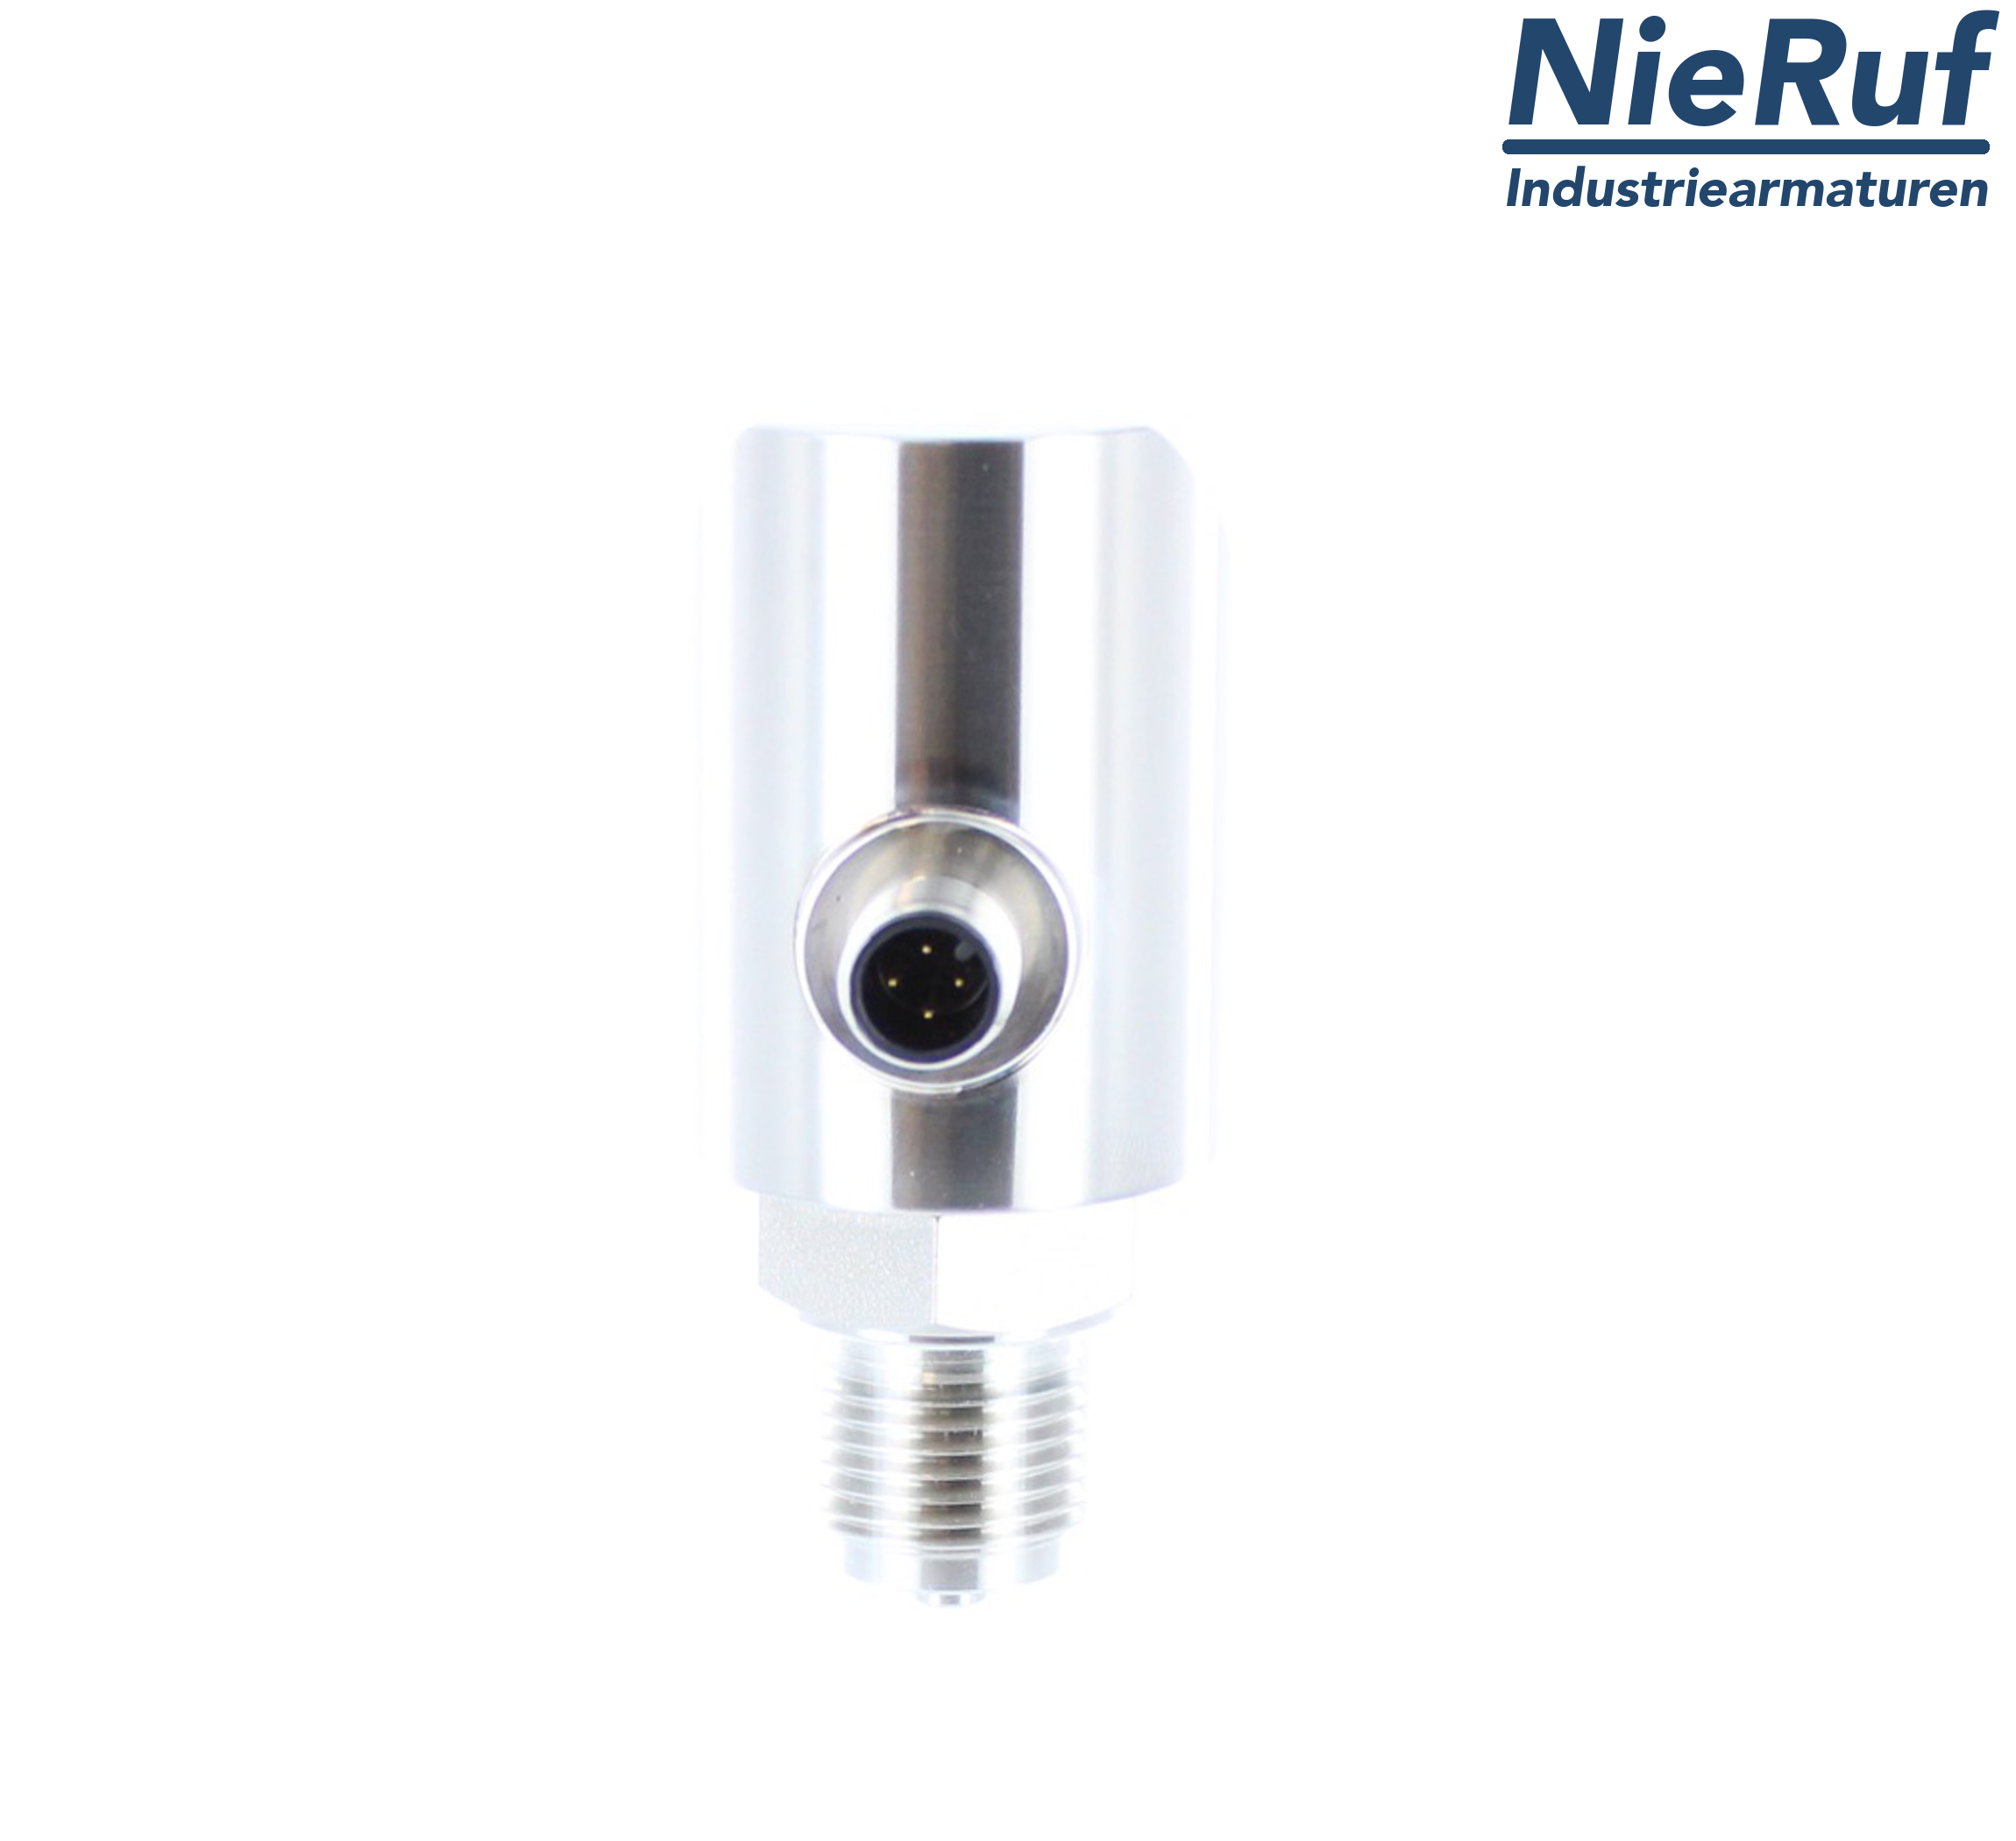 digital pressure sensor G 1/2" B 5-wire: 2xPNP, 1x4 - 20mA FPM 0,0 - 160,0 bar